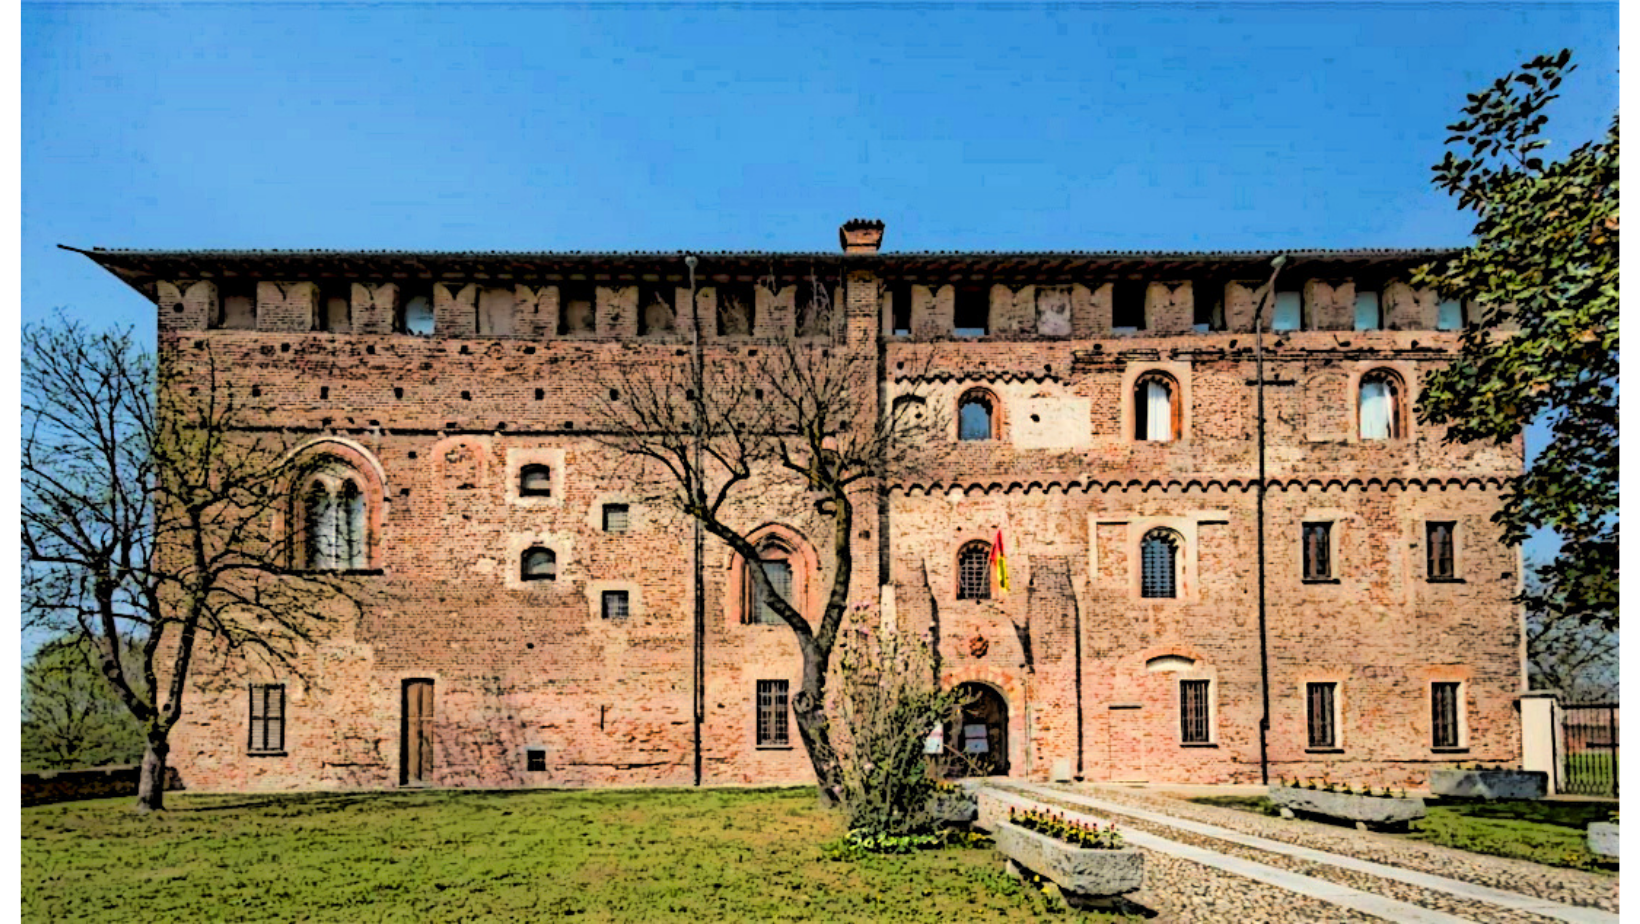 Visite guidate gratuite al castello di Lardirago: ecco come prenotarle